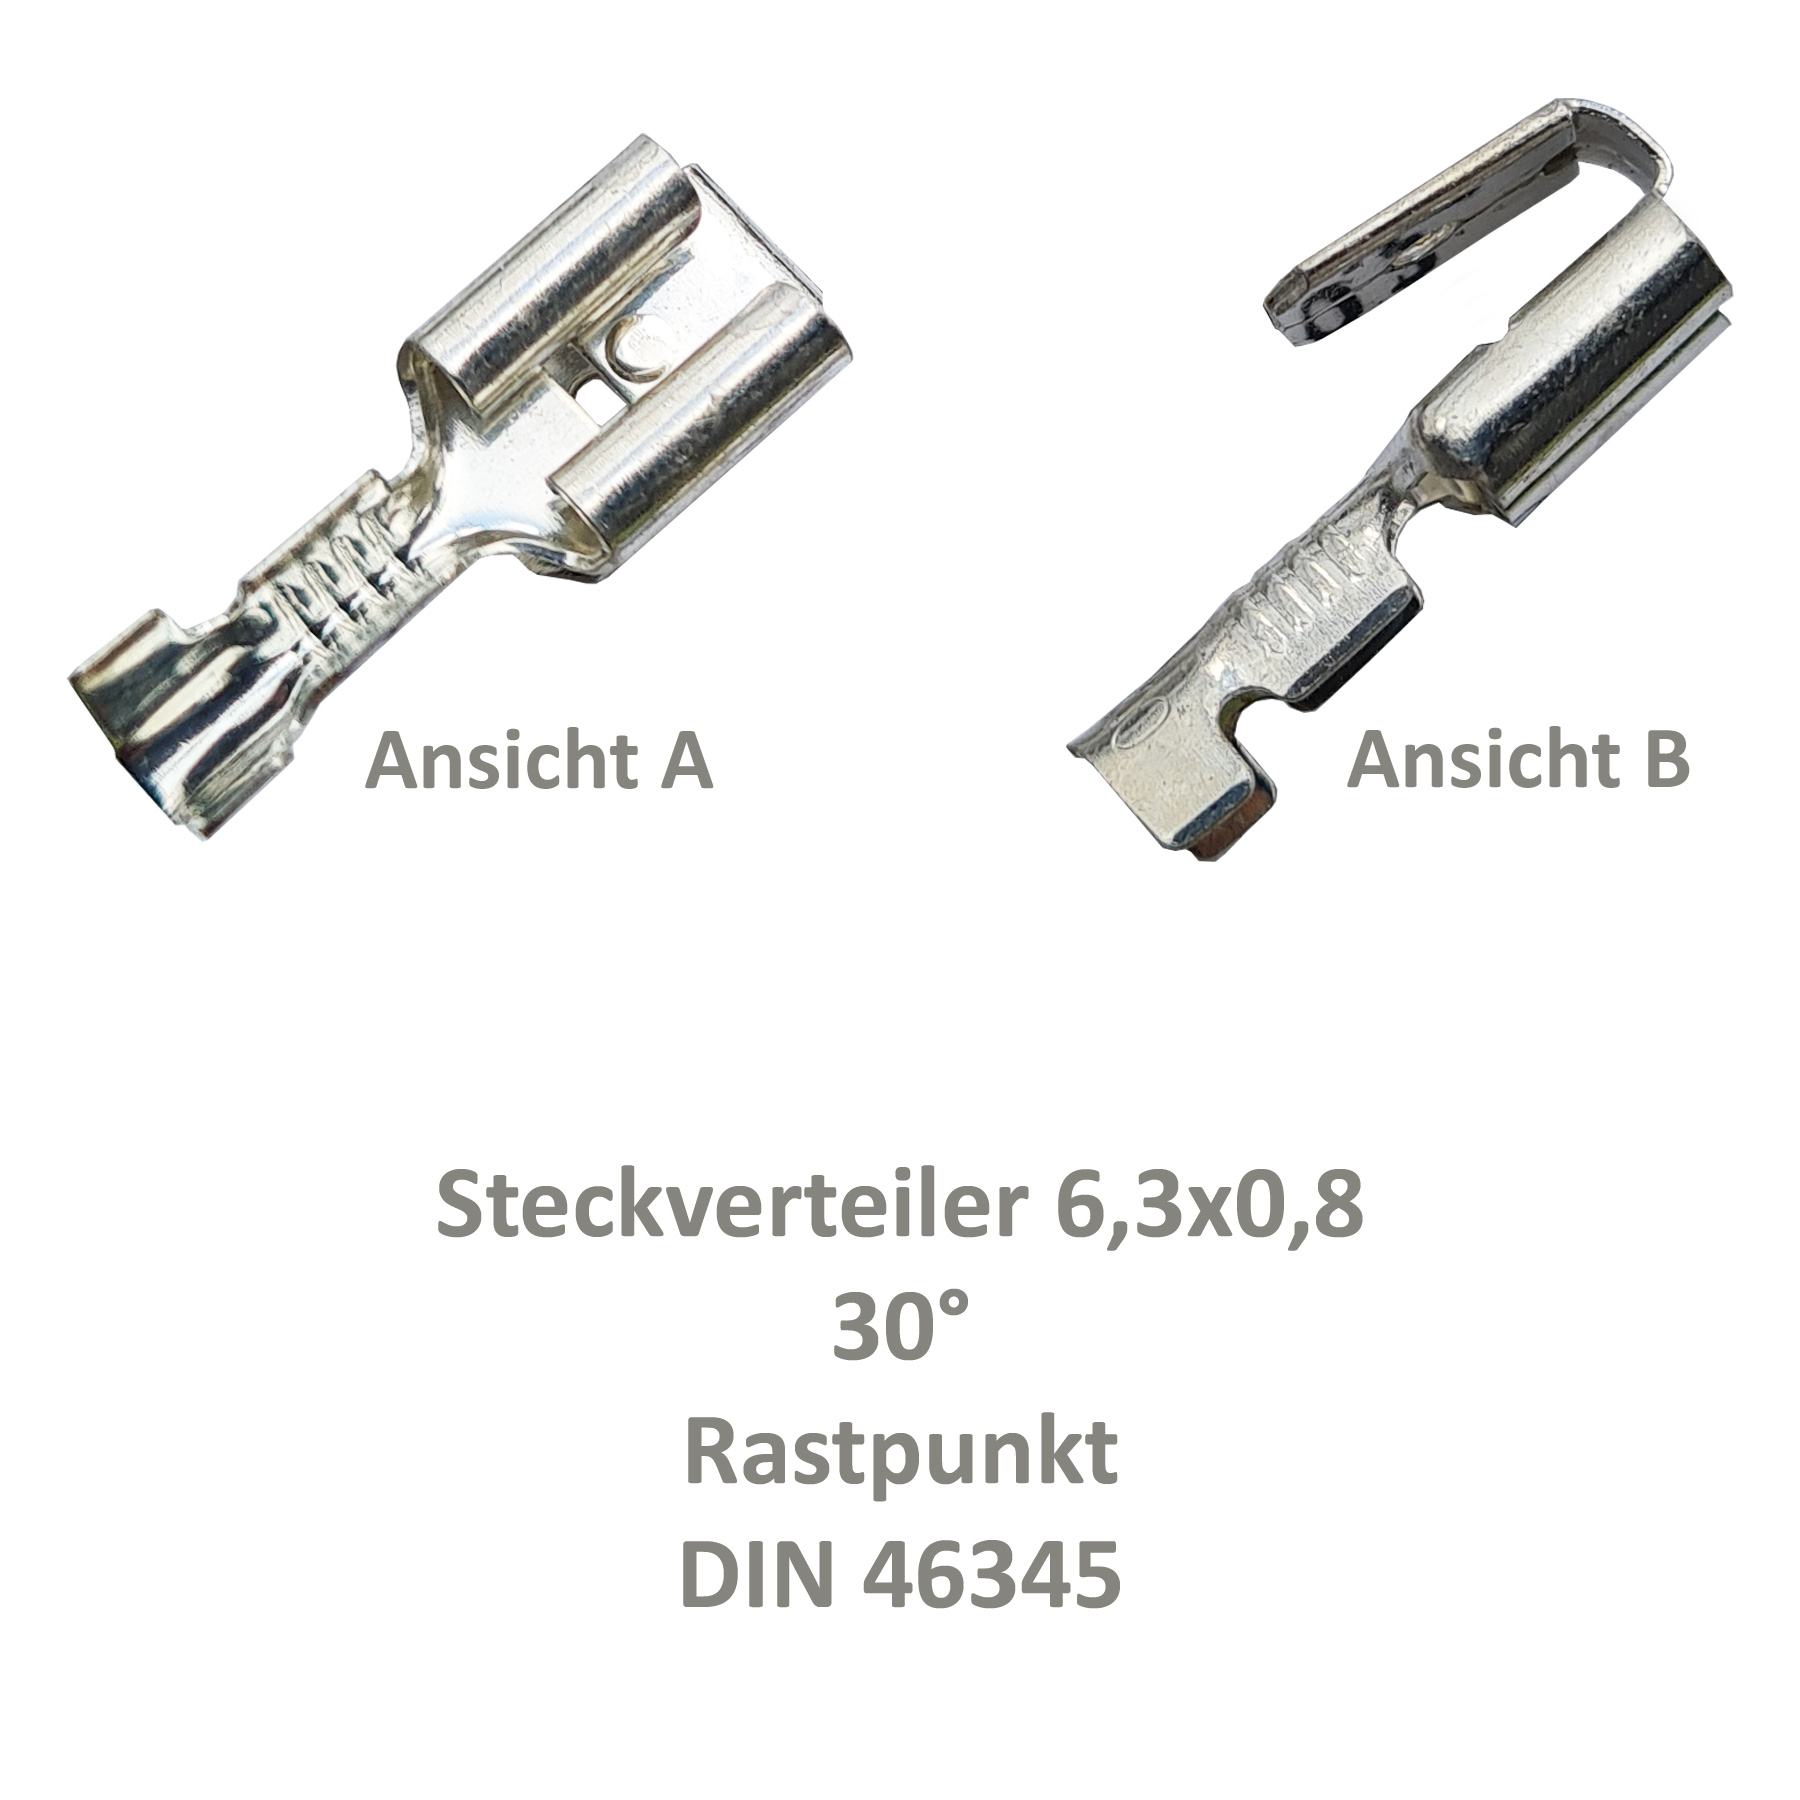 10 Steckverteiler Abzweiger Flachsteckhülse Flachstecker 6,3x0,8 0,5² DIN  46345